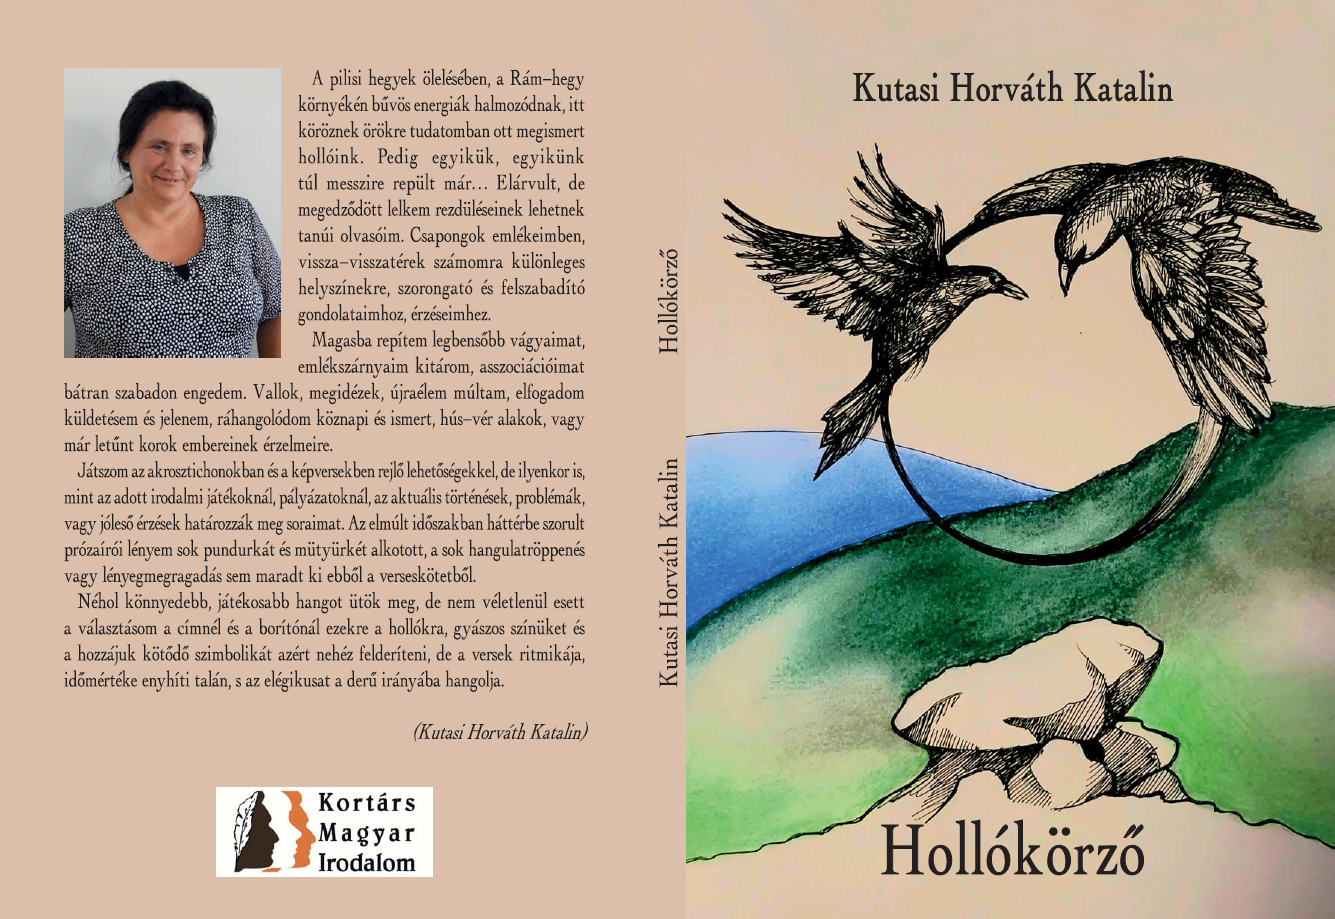 Kutasi Horváth Katalin: Hollókörző [KMI A 020]